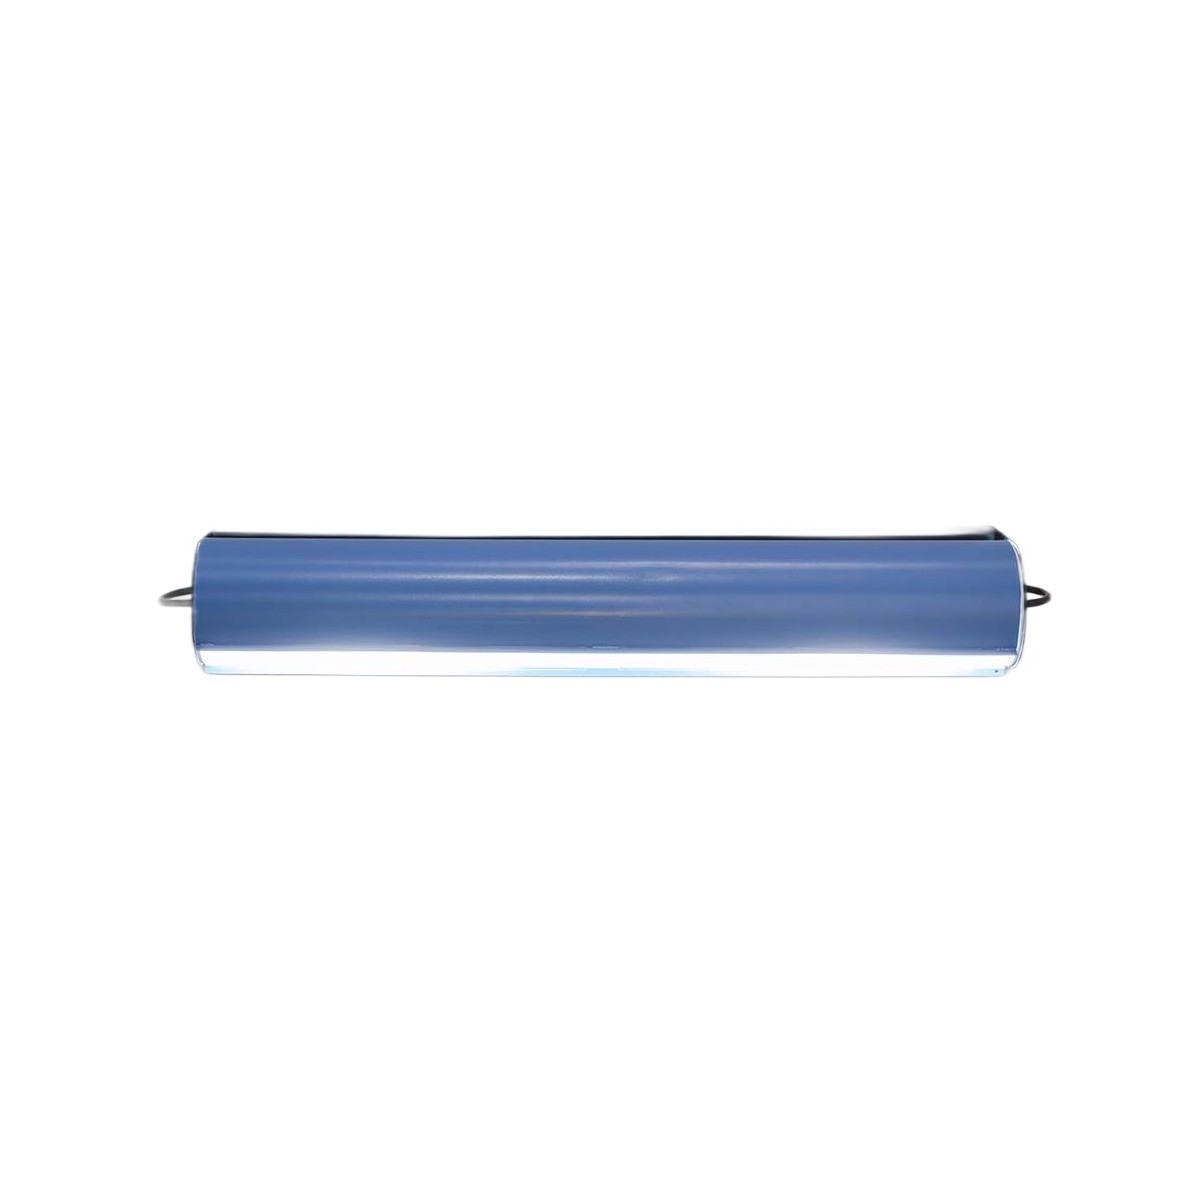 Longue Applique Cylindrique - bleu clair